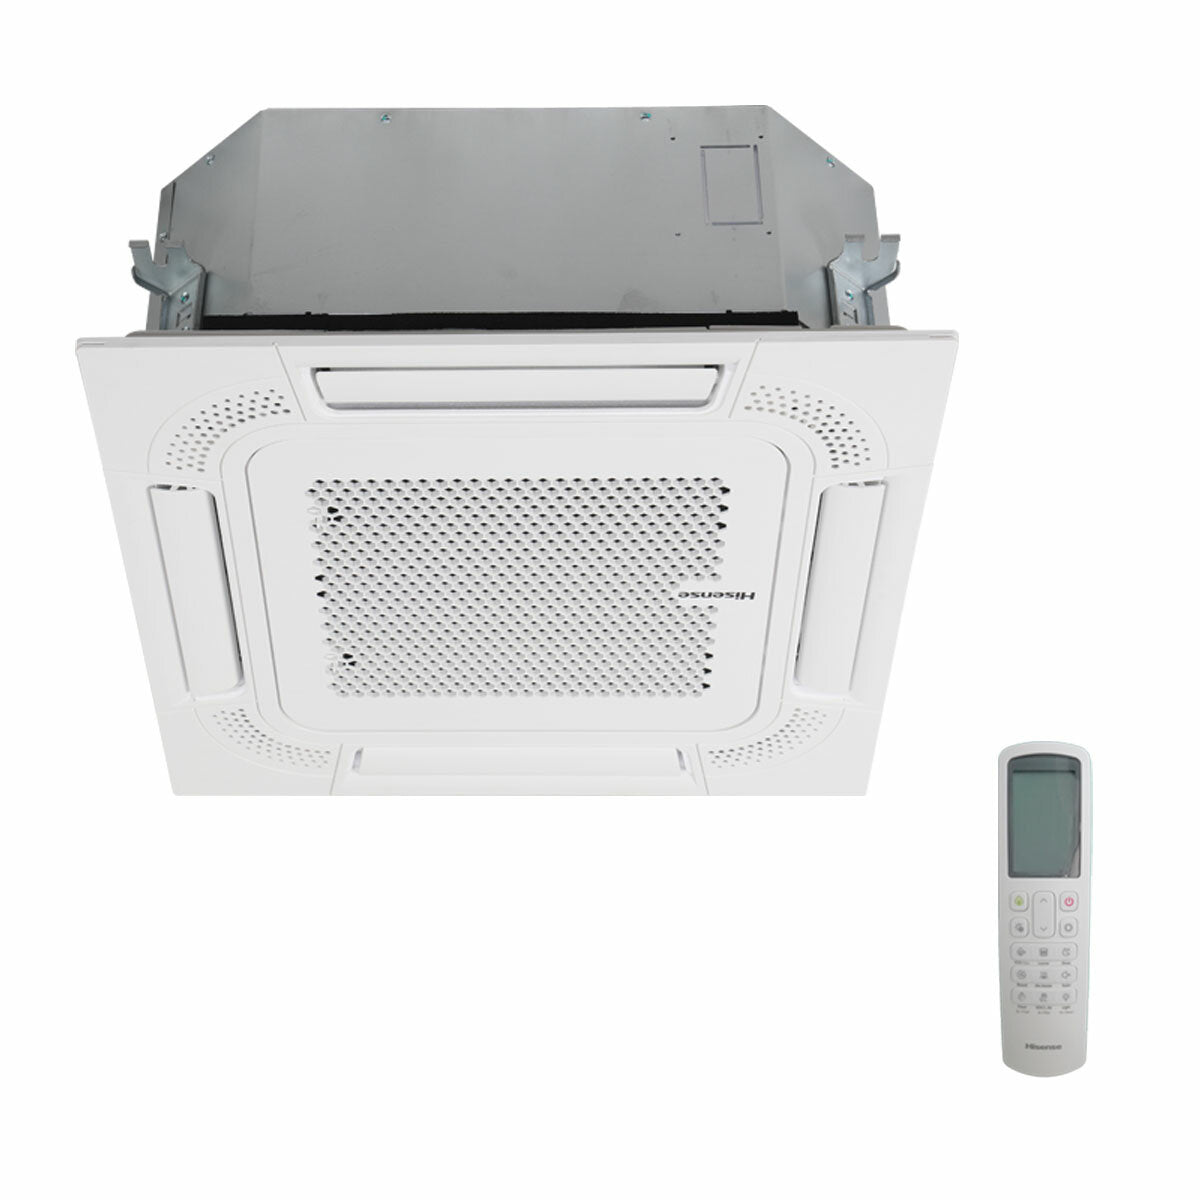 Hisense-Klimaanlage Cassette ACT Dual Split 9000+9000 BTU Inverter A++ Außengerät 4,1 kW